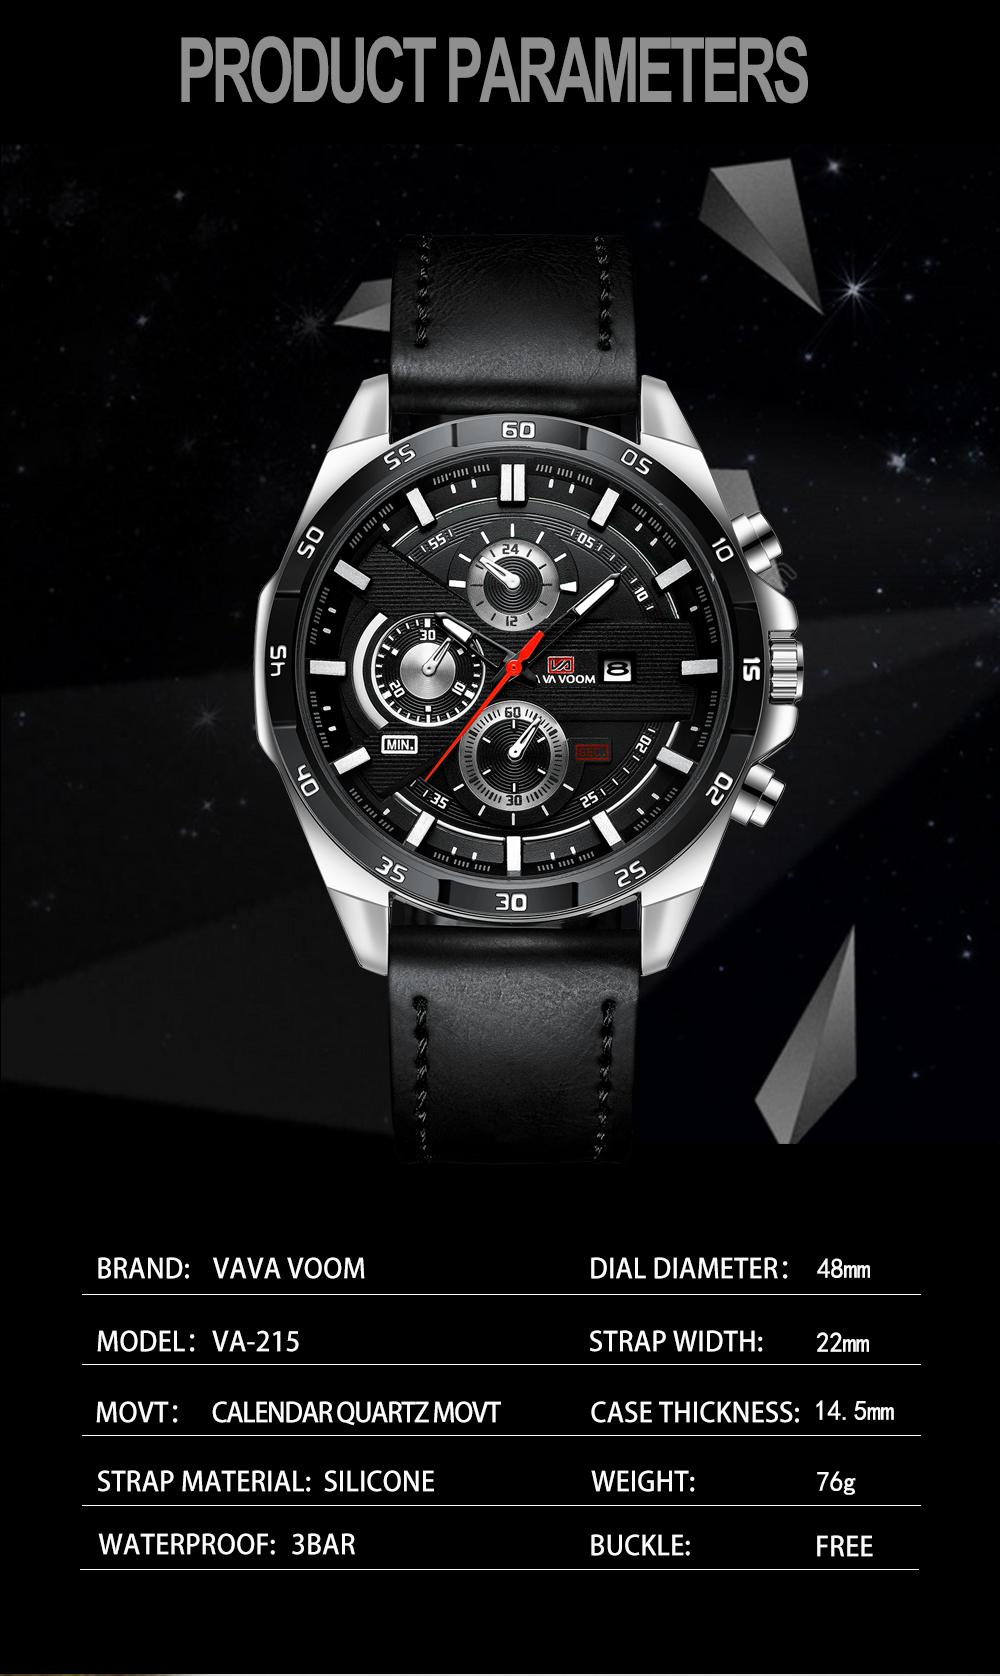 ข้อมูลประกอบของ Riches Mall RW198 นาฬิกาผู้ชาย นาฬิกา วินเทจ ผู้ชาย นาฬิกาข้อมือผู้หญิง นาฬิกาข้อมือ นาฬิกาควอตซ์ Watch นาฬิกาสายหนัง